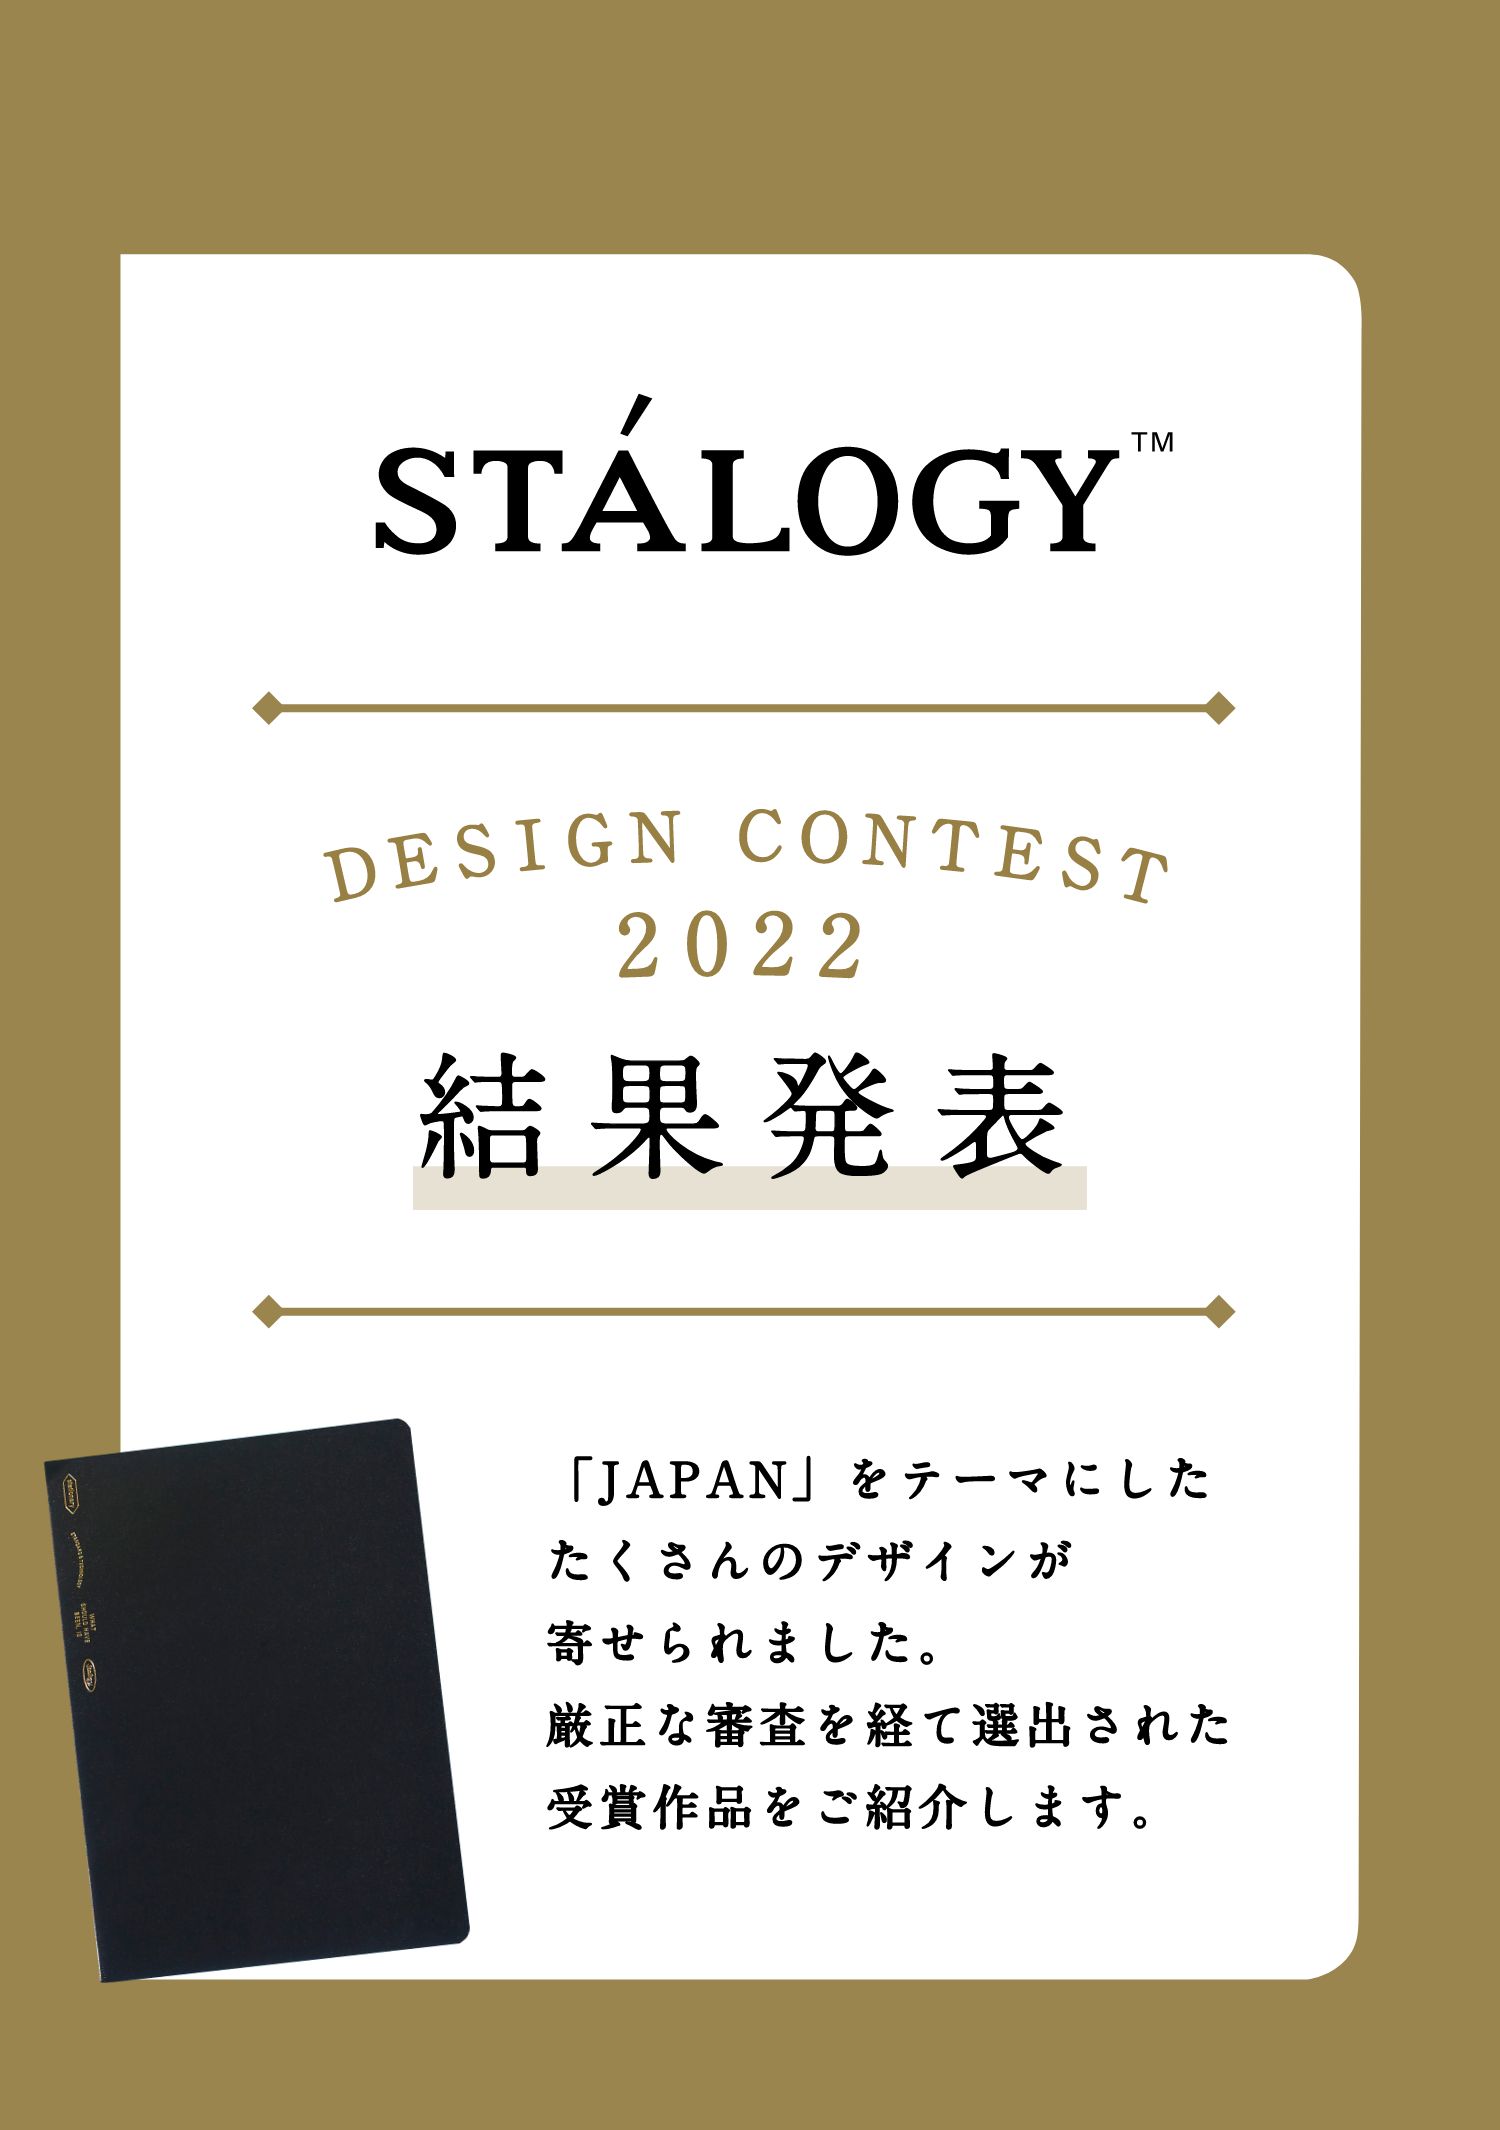 STÁLOGY™ DESIGN CONTEST 2022 結果発表 「JAPAN」をテーマにしたたくさんのデザインが寄せられました。厳正な審査を経て選出された受賞作品をご紹介します。